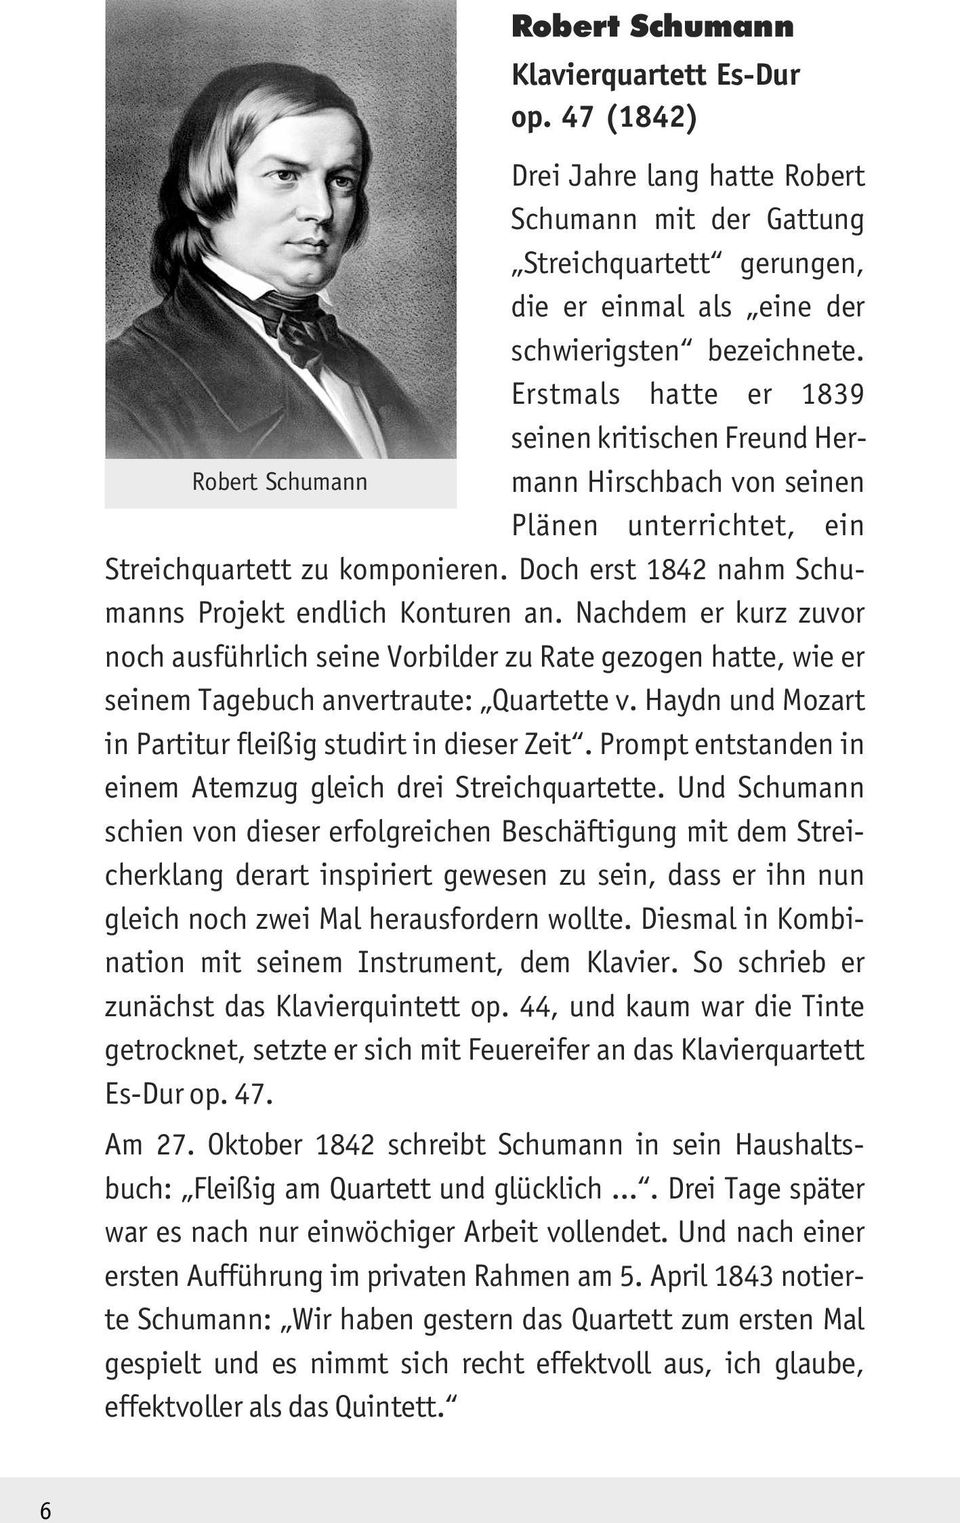 Doch erst 1842 nahm Schumanns Projekt endlich Konturen an. Nachdem er kurz zuvor noch ausführlich seine Vorbilder zu Rate gezogen hatte, wie er seinem Tagebuch anvertraute: Quartette v.